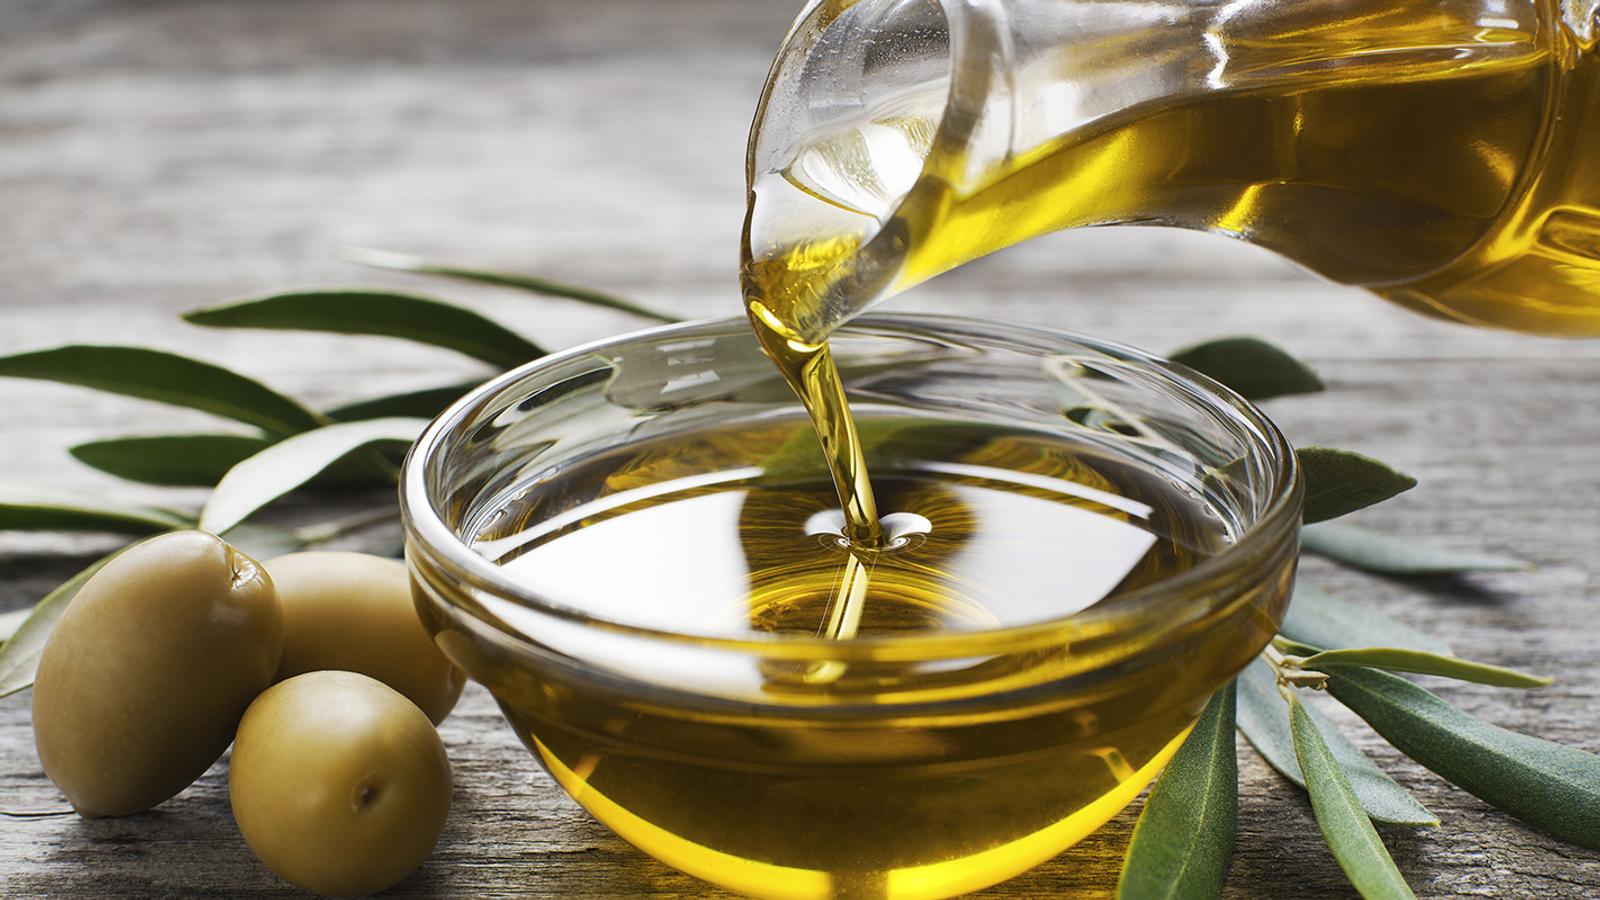 Olivenöl ist ein pflanzliches Öl